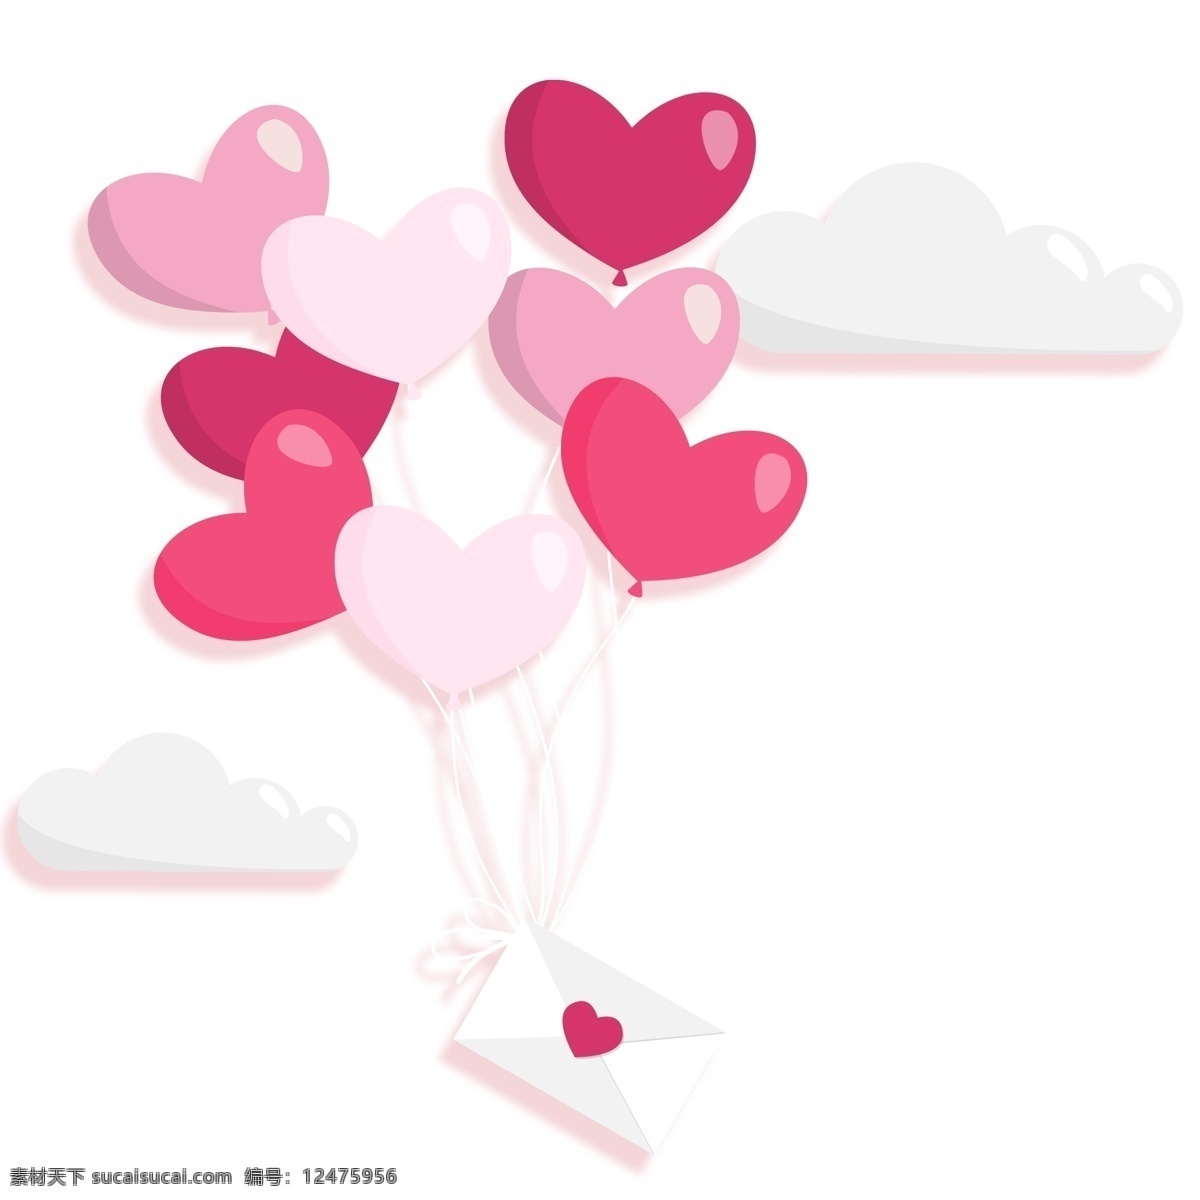 浪漫 粉色 气球 装饰 元素 清新 表白 运动 信封 粉嫩 少女心 装饰元素